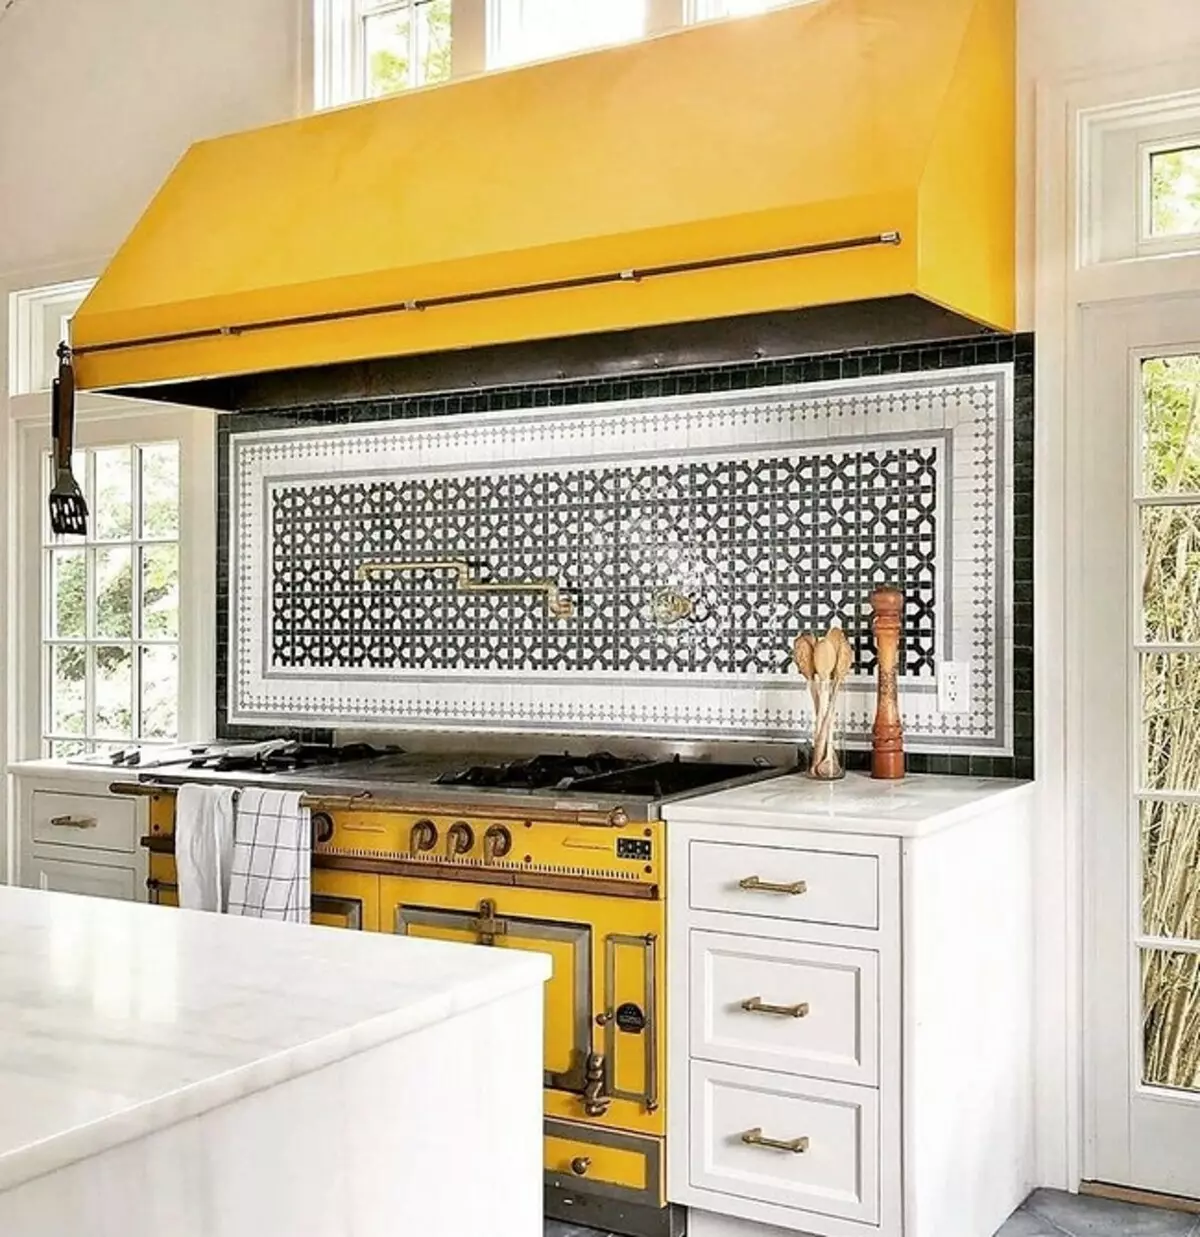 Մենք նկարում ենք դեղին խոհանոցի ինտերիեր. Լավագույն գույնի համադրություններ եւ 84 լուսանկար 3585_41